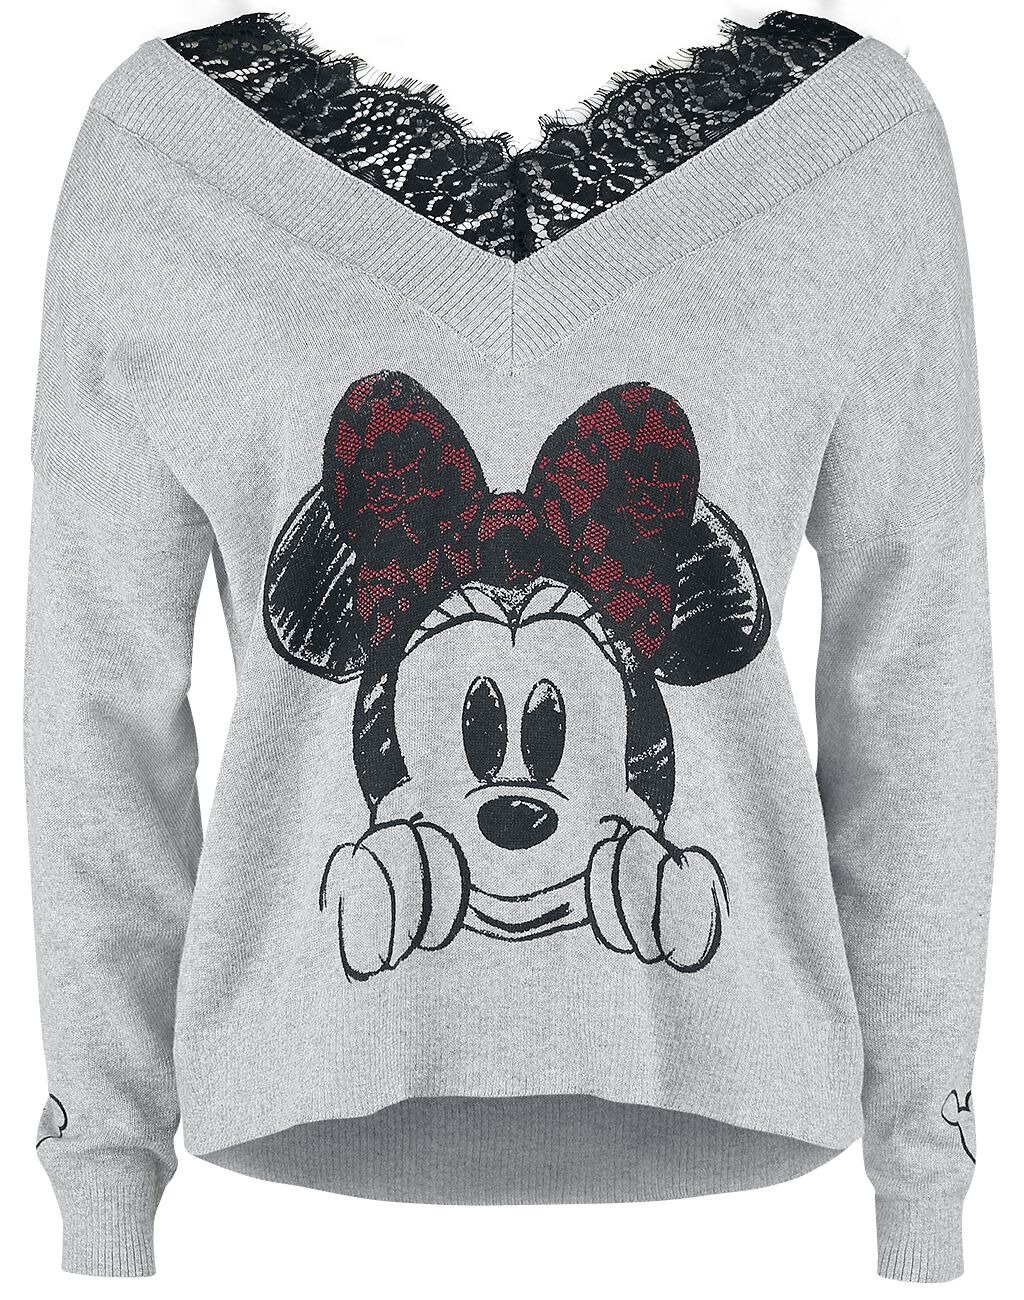 Mickey Mouse - Disney Sweatshirt - Minnie Maus - S bis XL - für Damen - Größe XL - grau meliert  - EMP exklusives Merchandise!